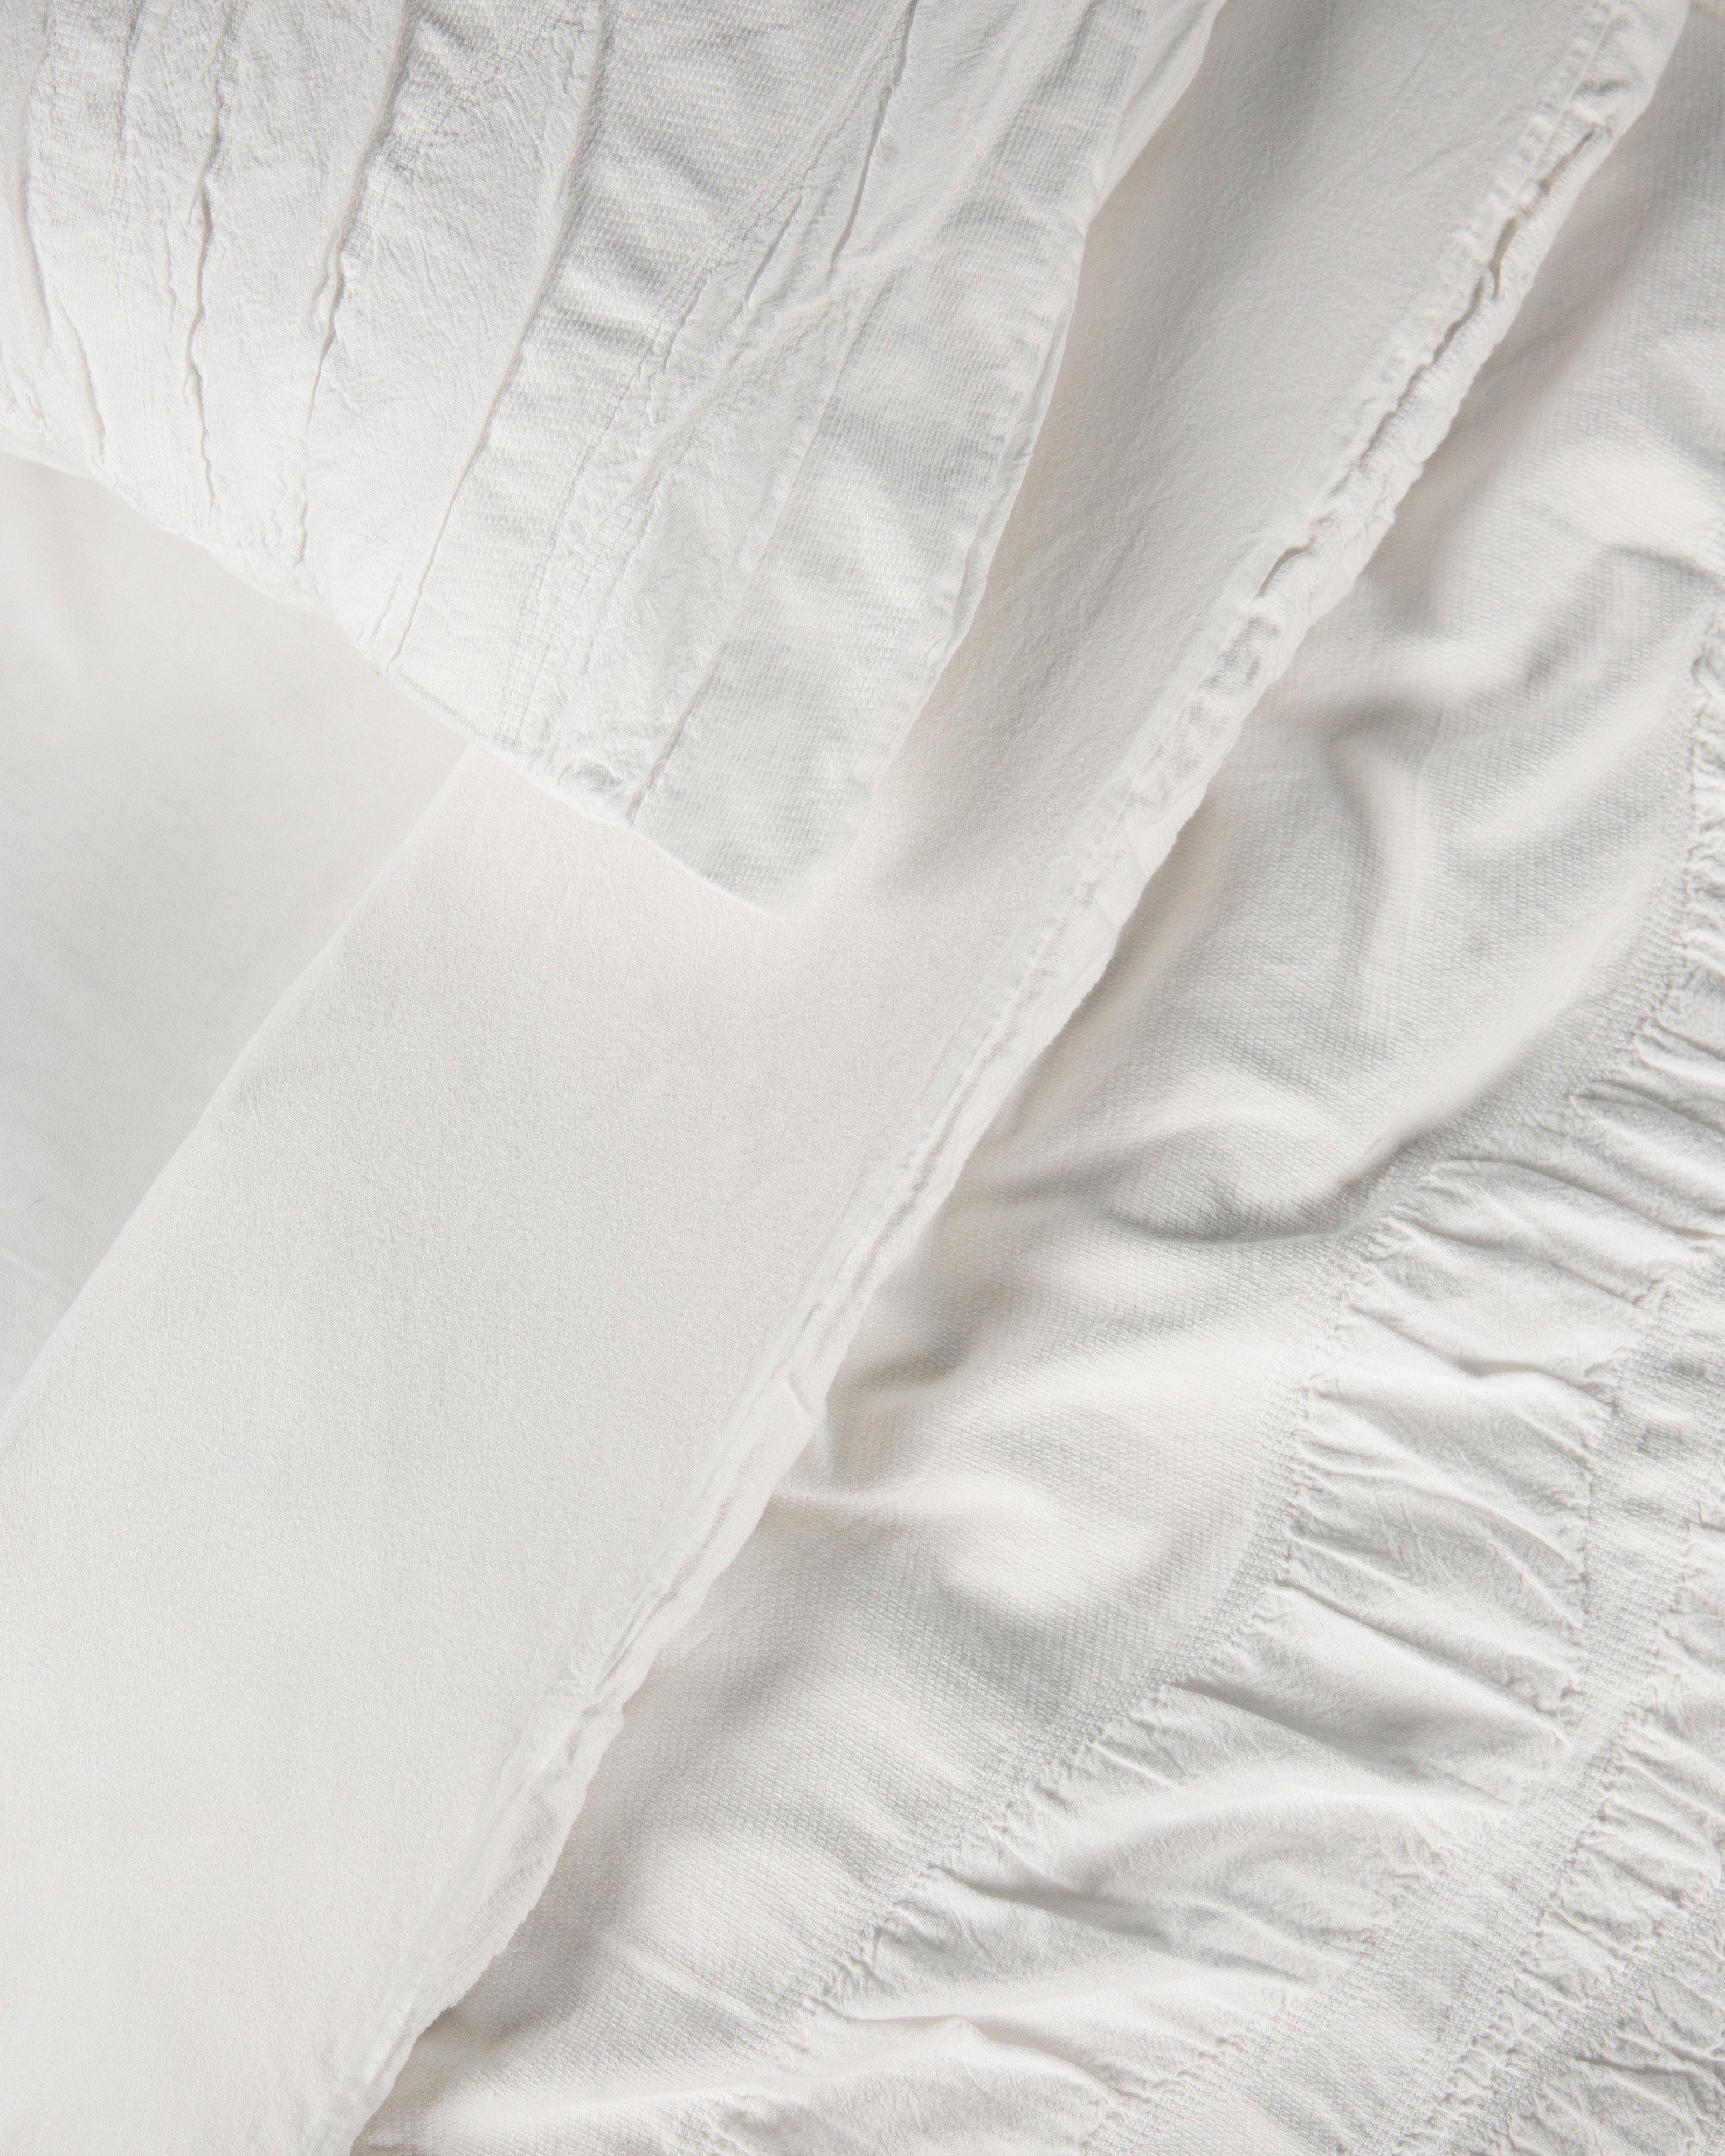 Ariel Textured Duvet Set and Pillows Queen -  White